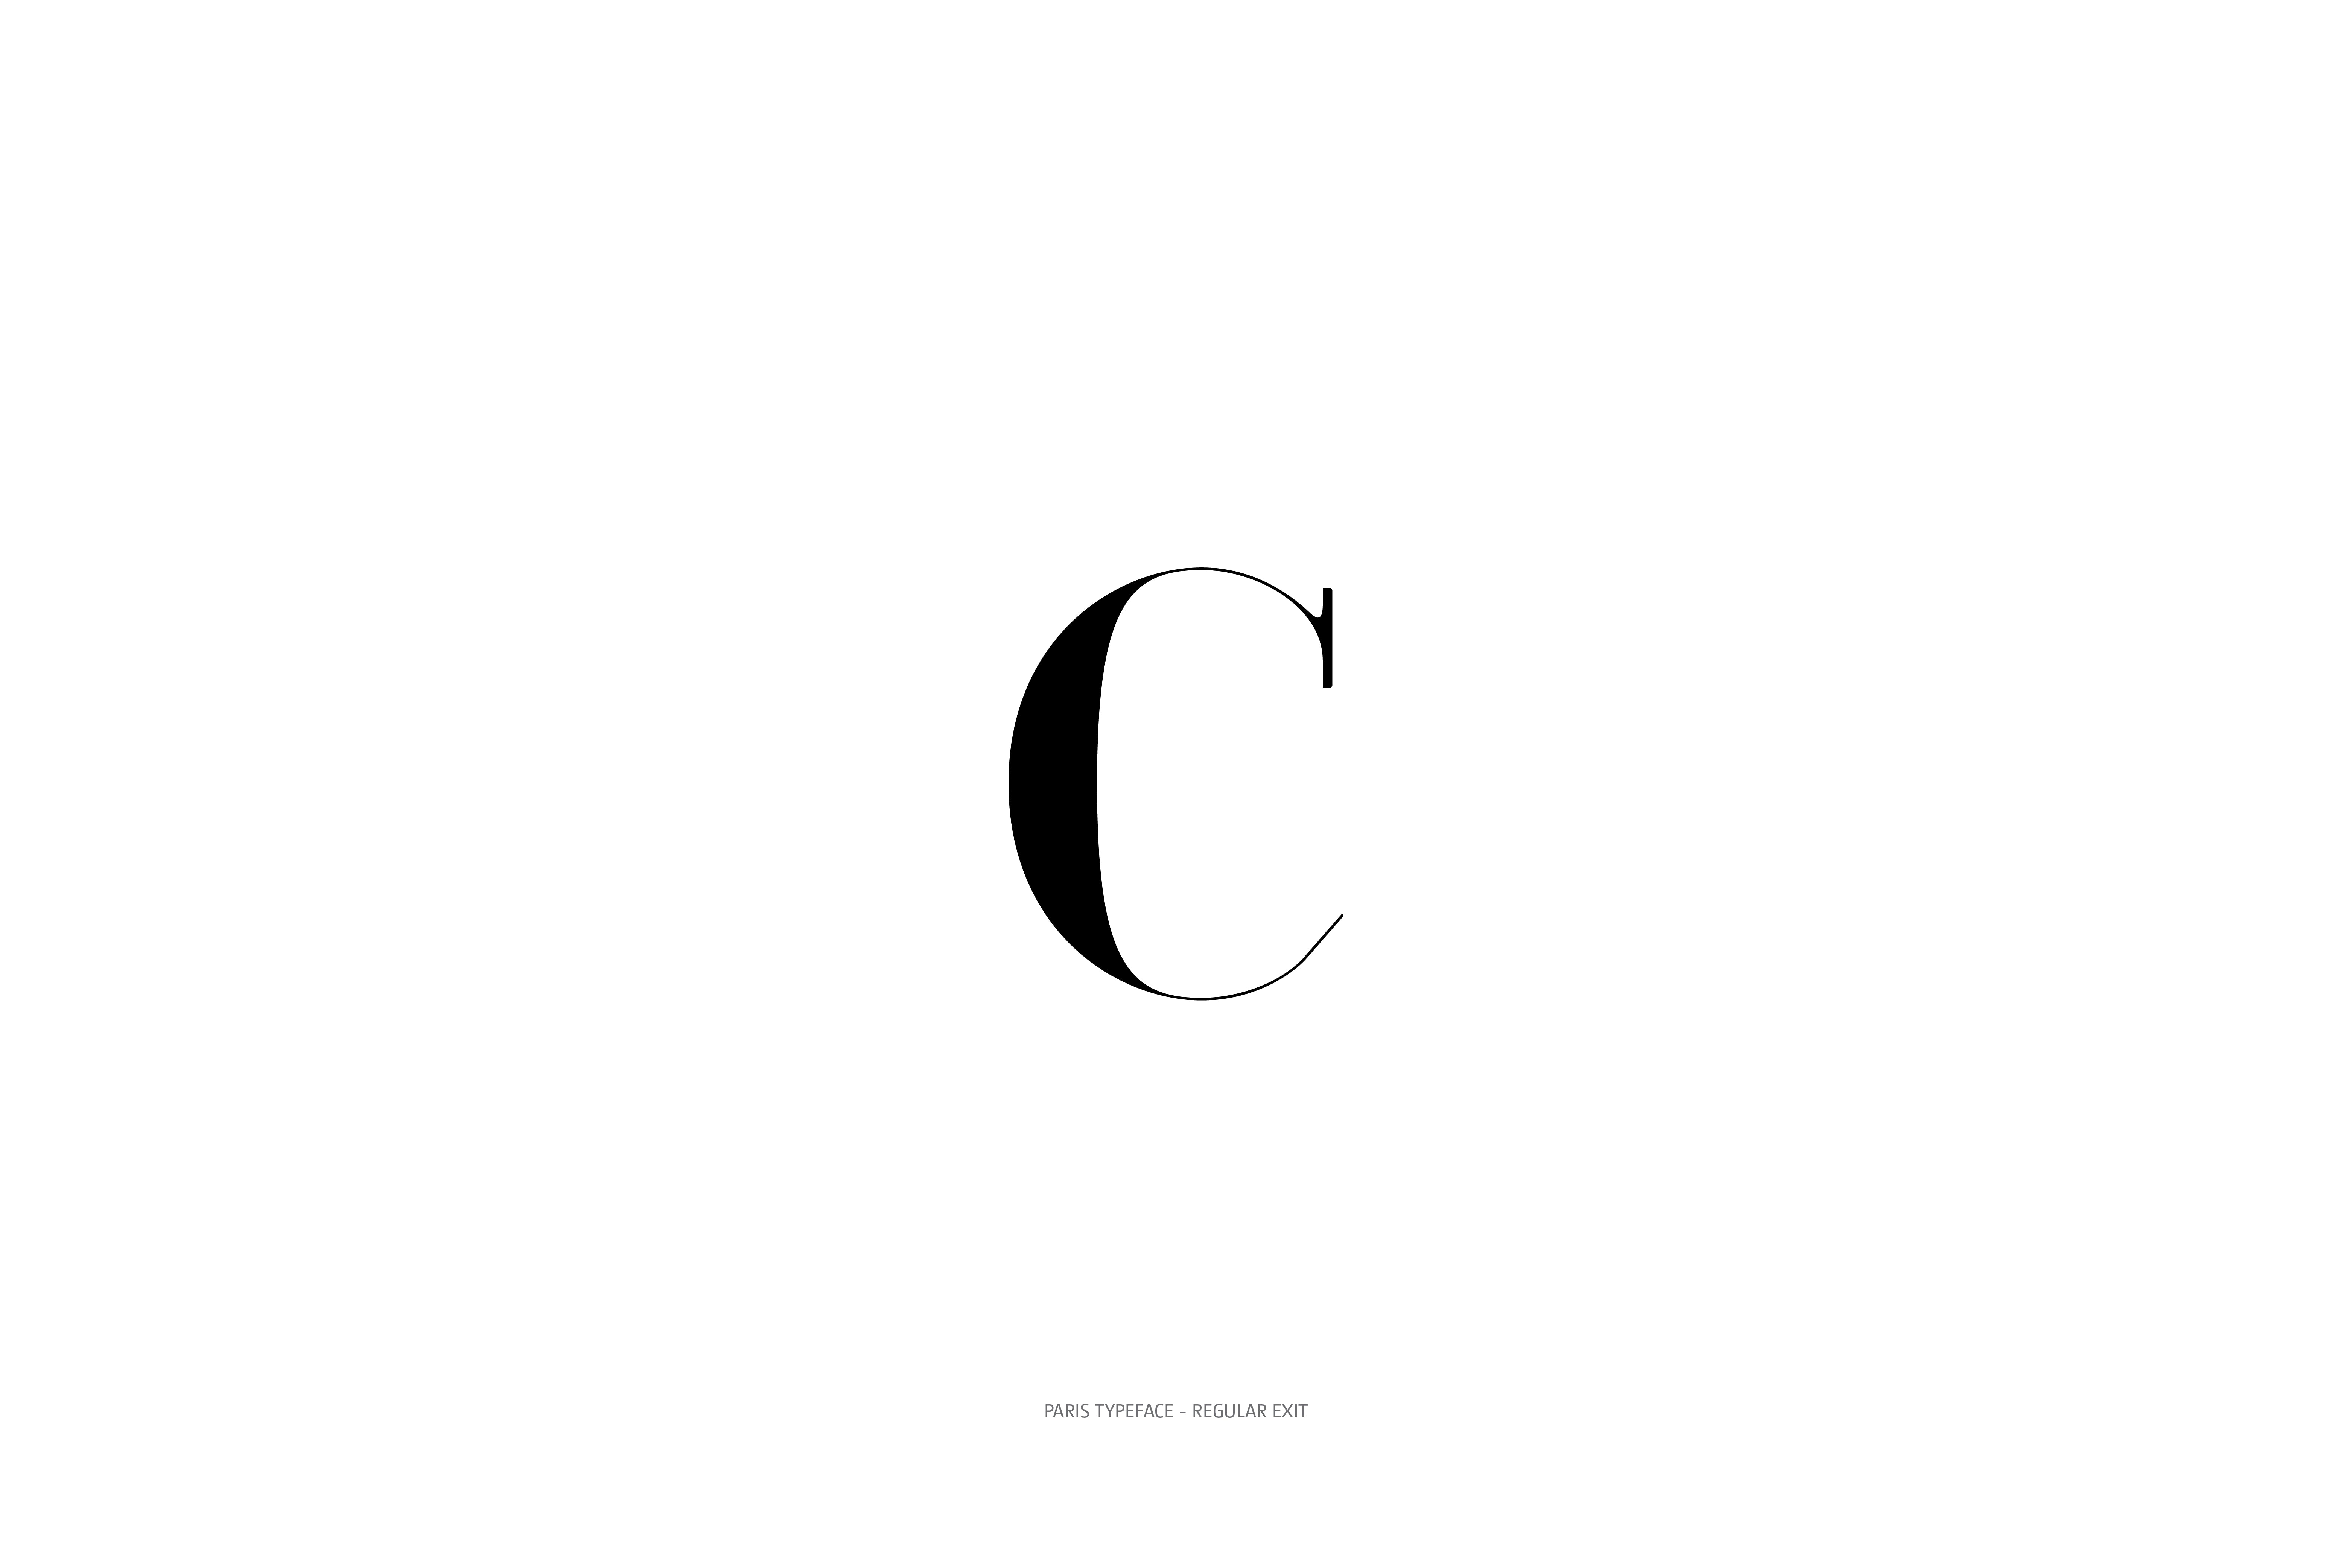 Paris Typeface Regular Exit c